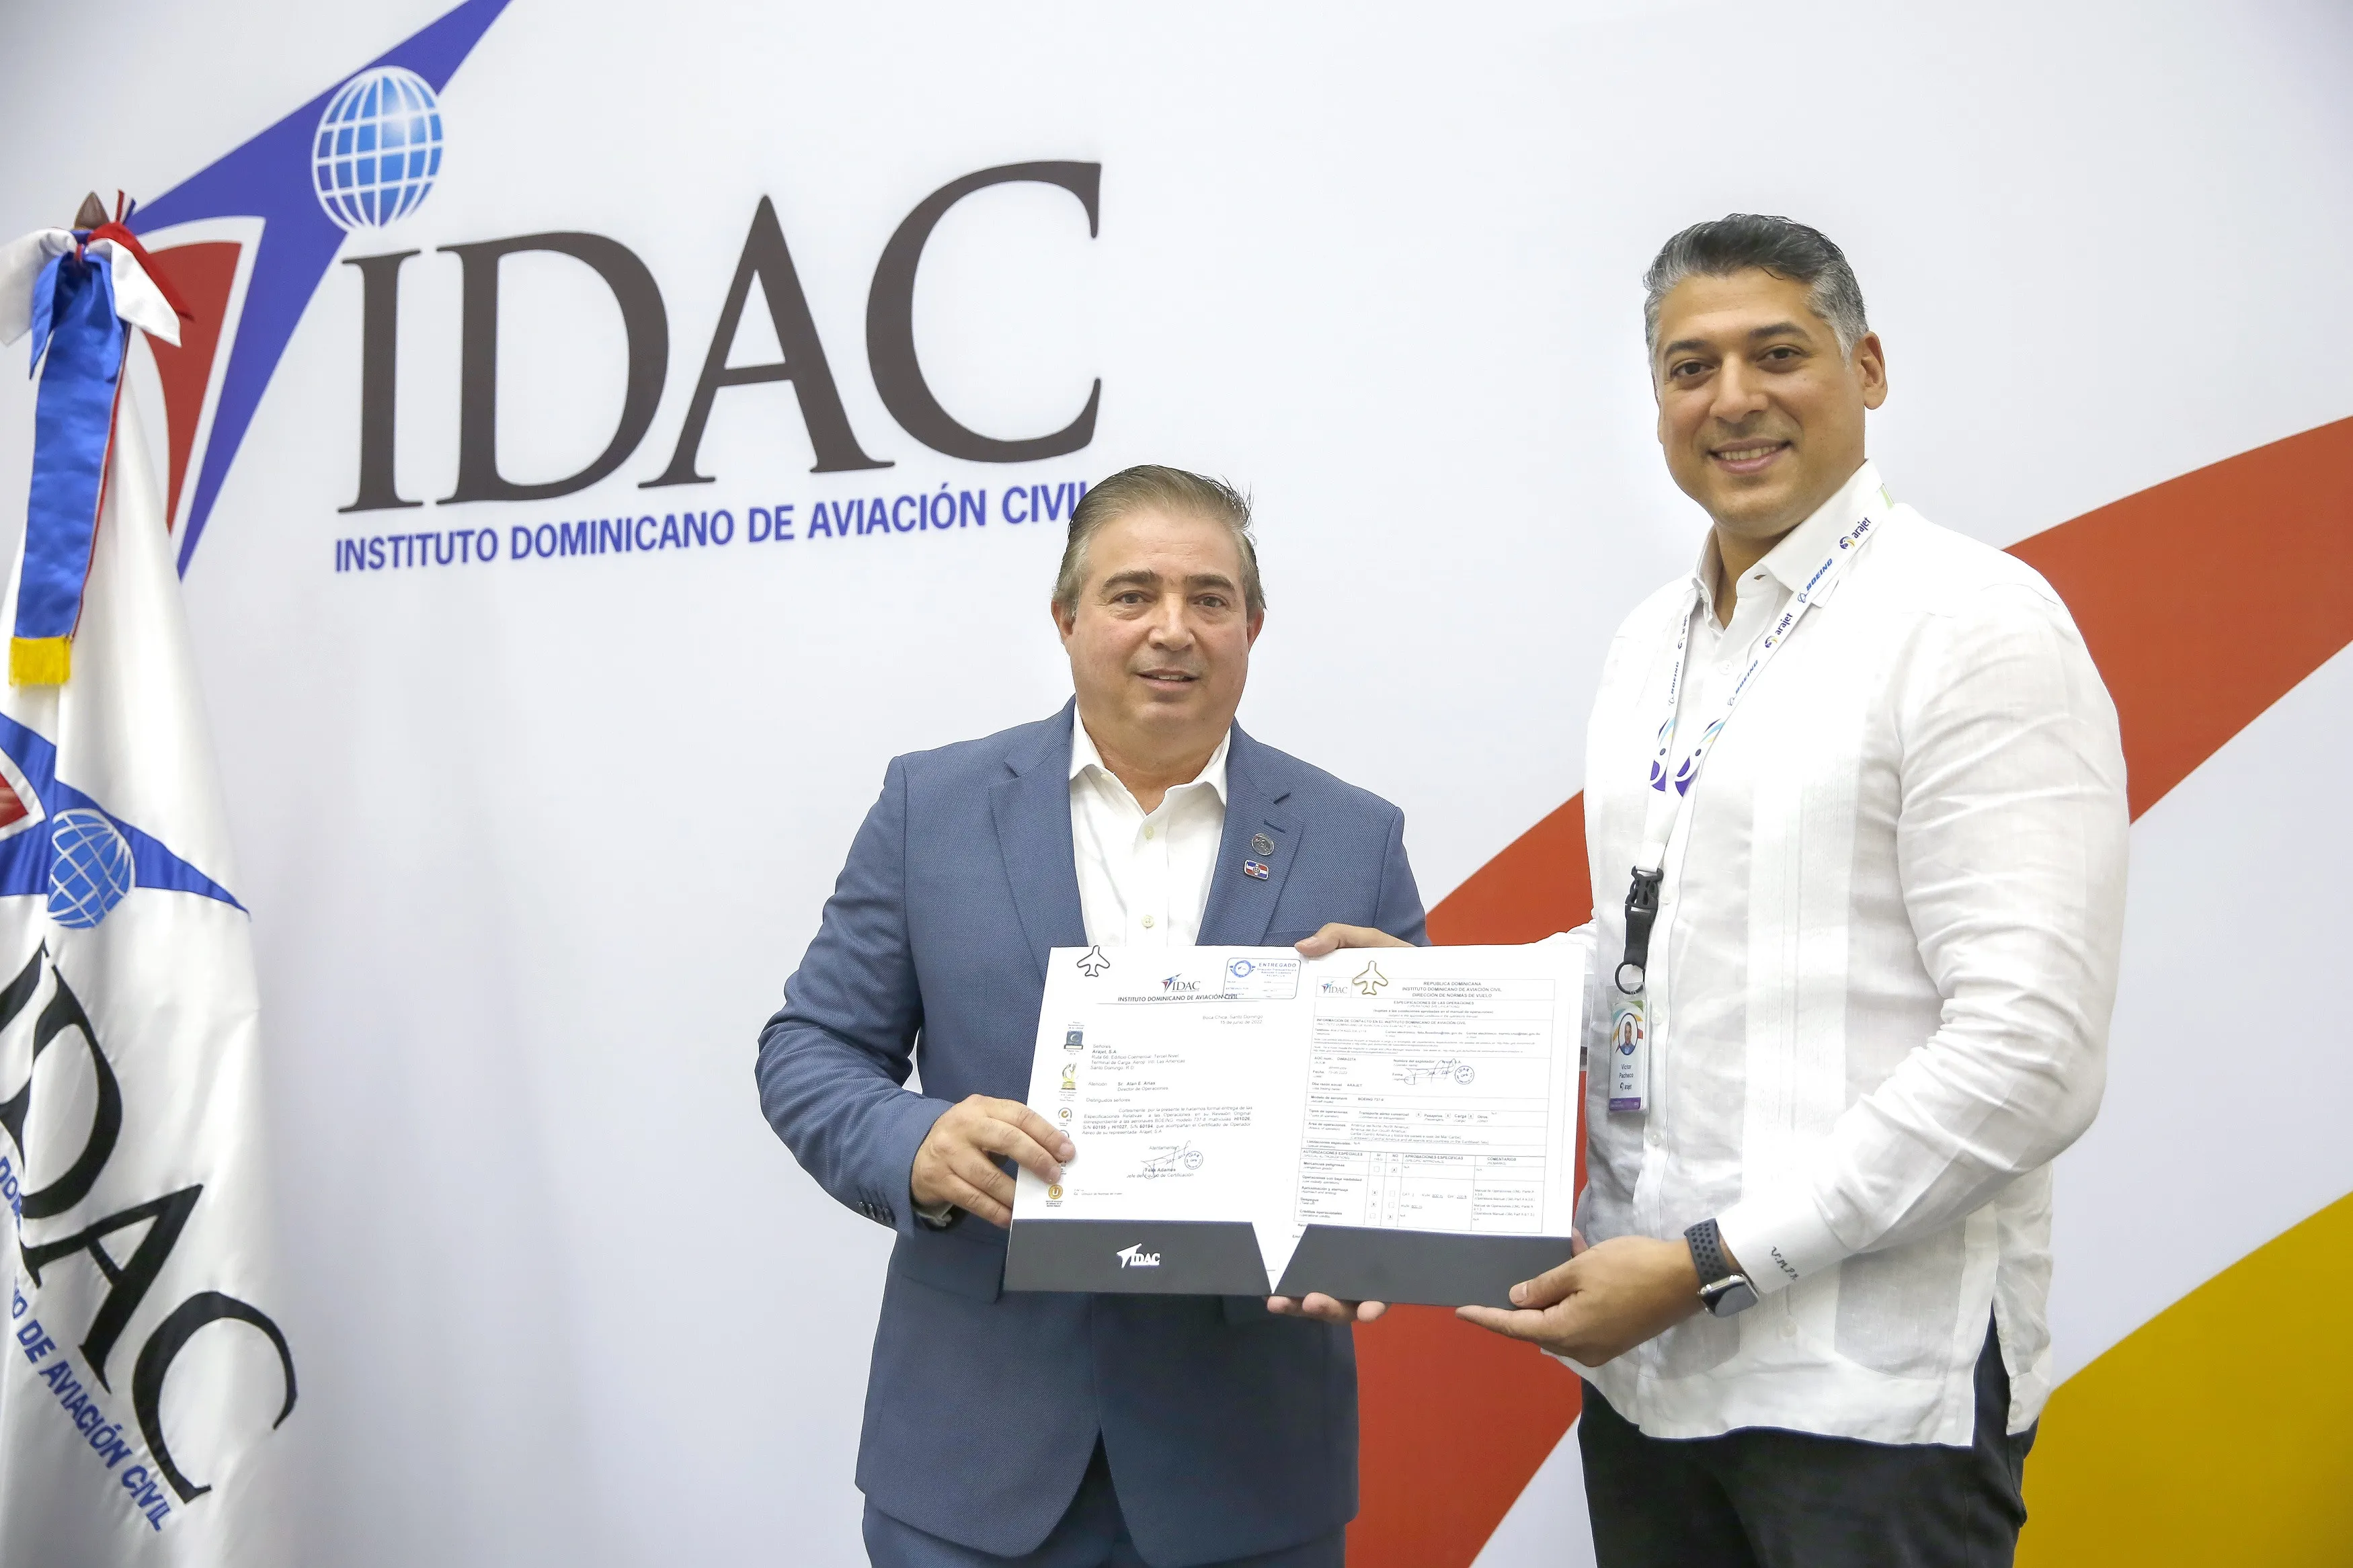 Arajet ya tiene certificación para operar vuelos en República Dominicana